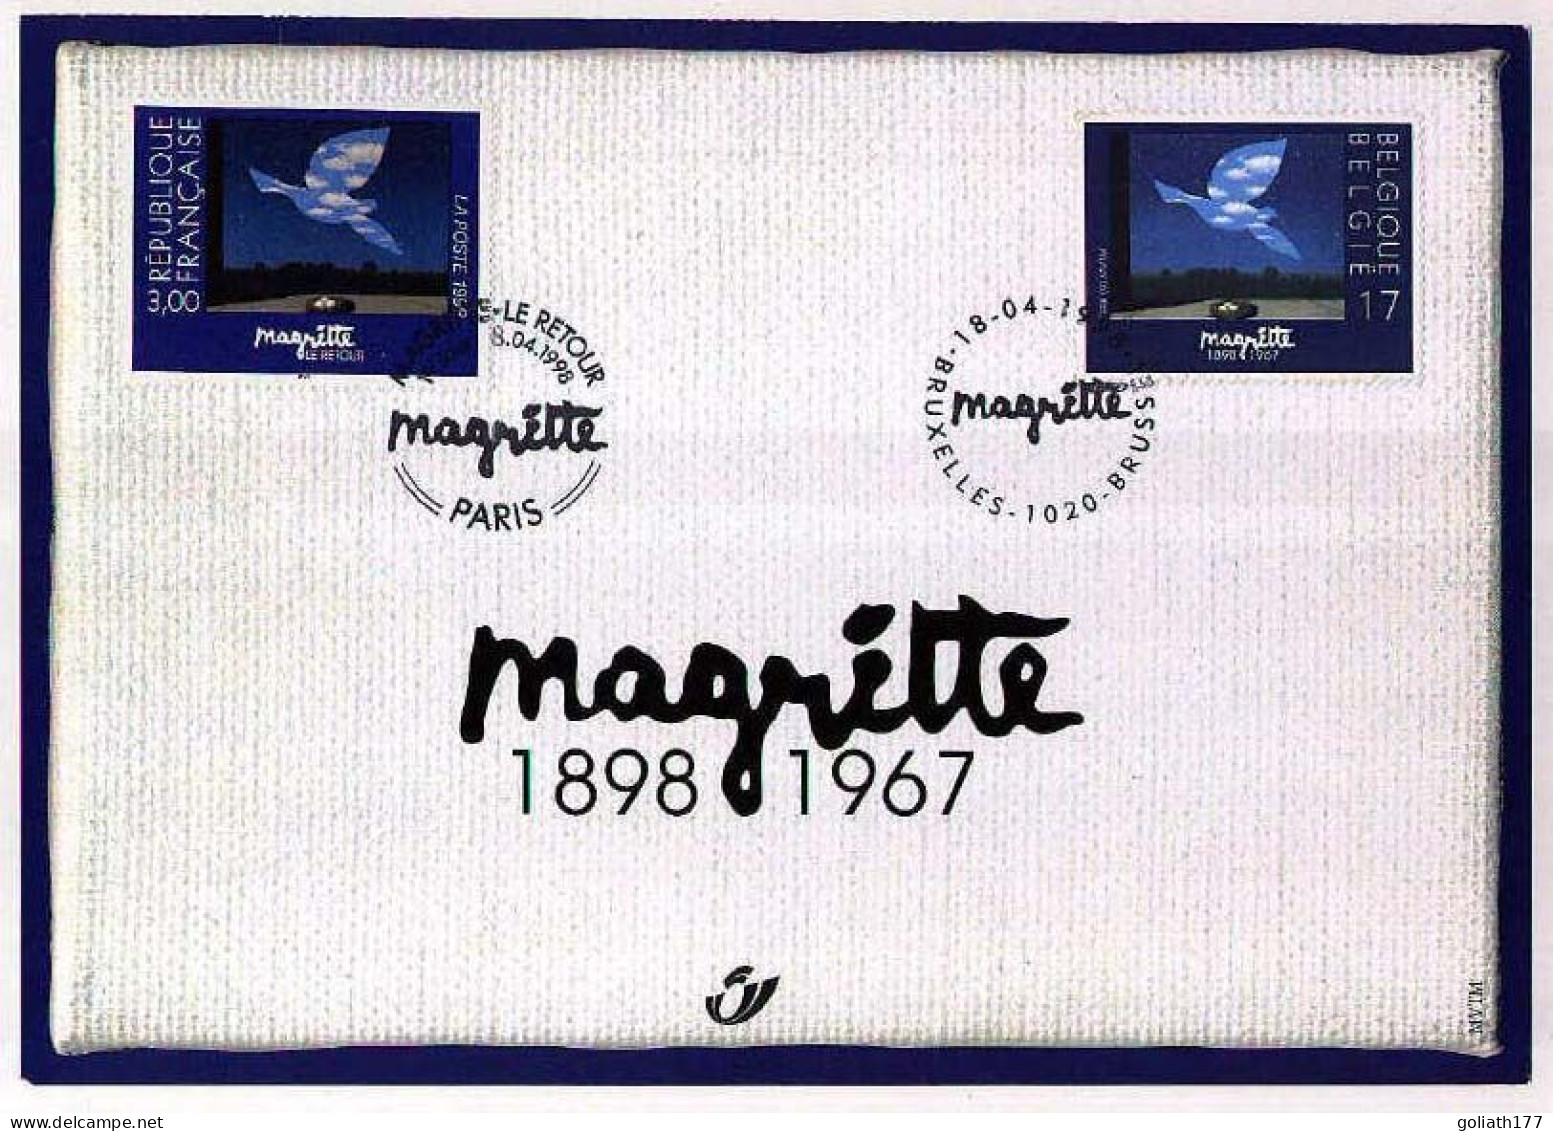 2755HK - Herdenkingskaart "Magritte" - Herdenkingskaarten - Gezamelijke Uitgaven [HK]